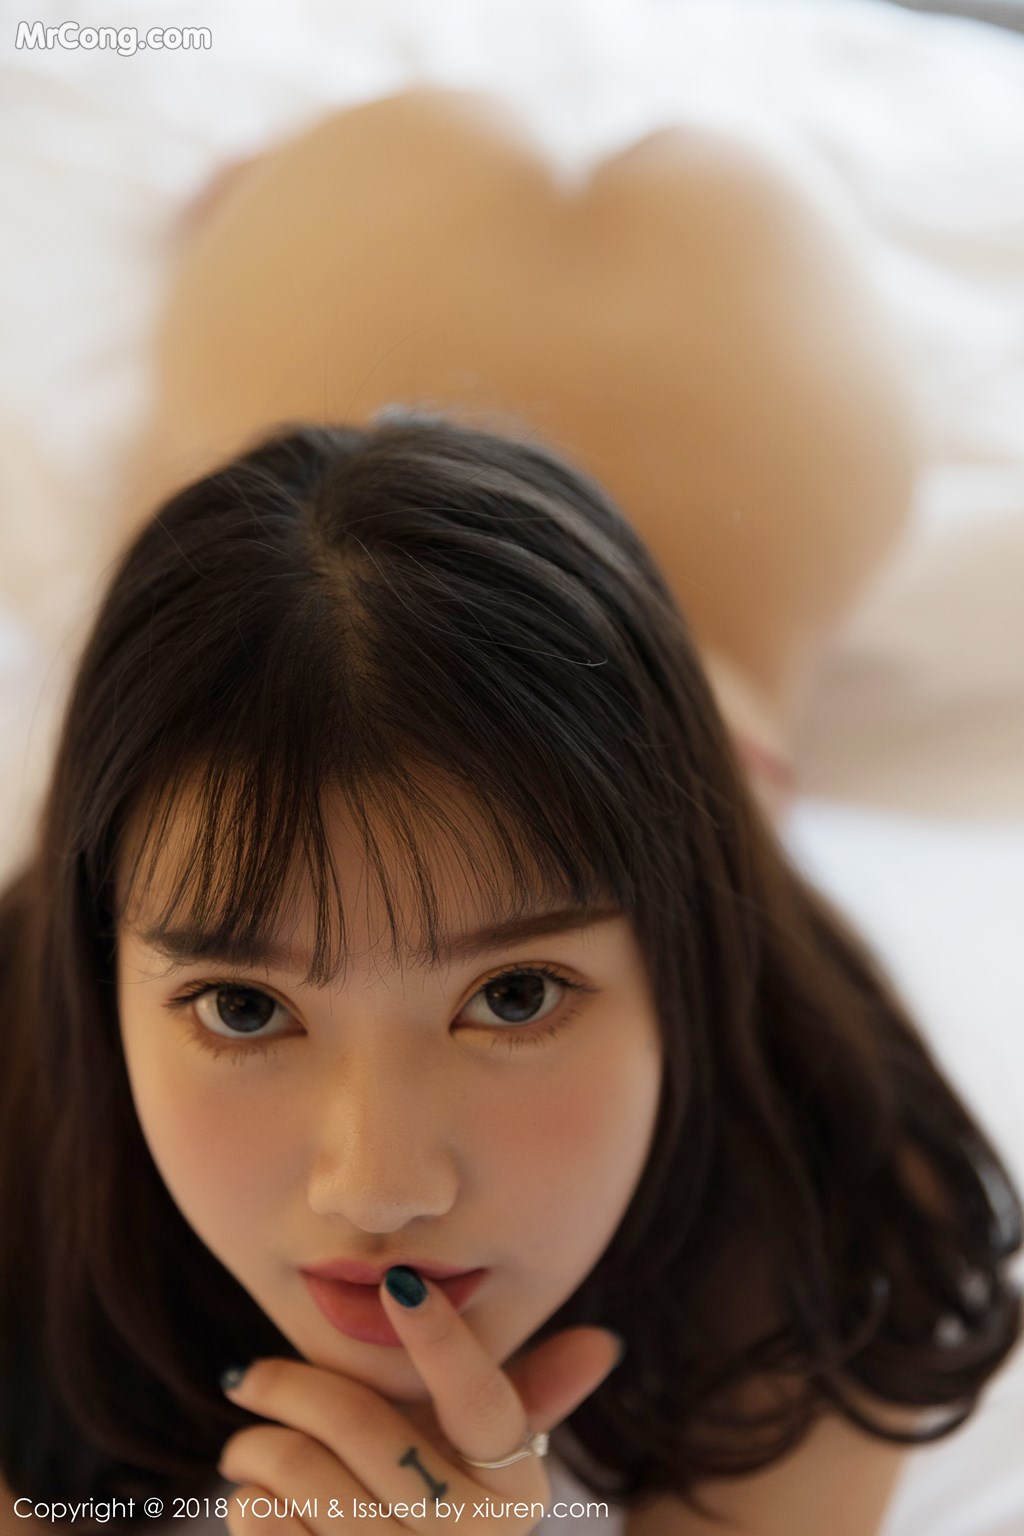 YouMi Vol.248: Model Xiao You Nai (小 尤奈) (56 photos)